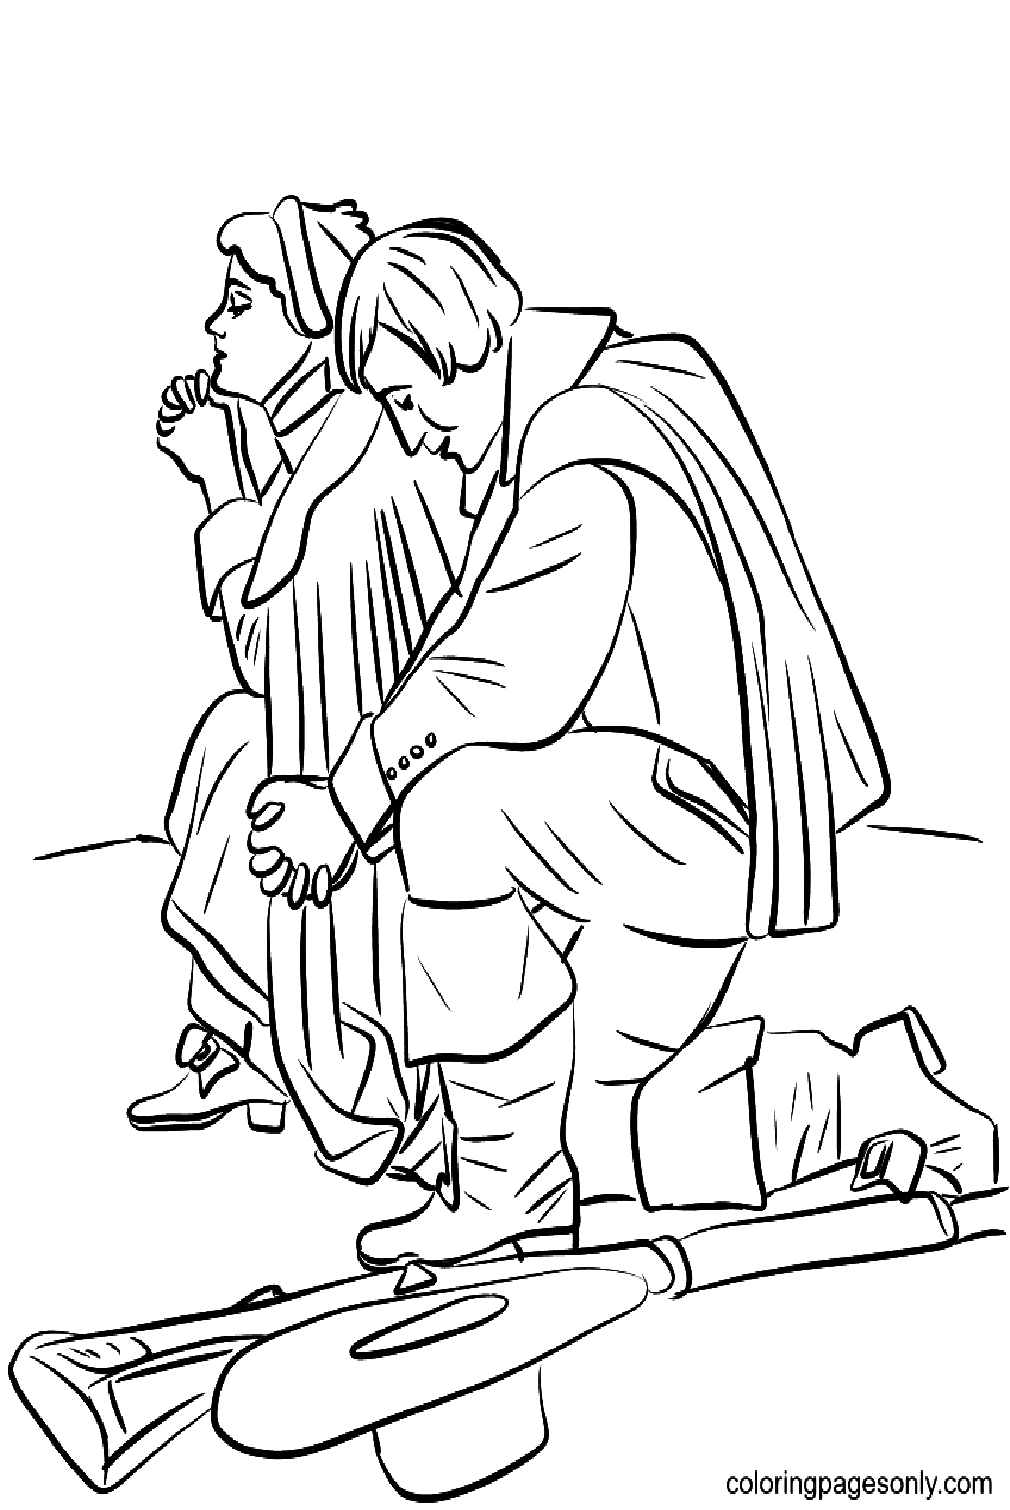 Pilgrim Couple Kneeling in Prayer from Thanksgiving